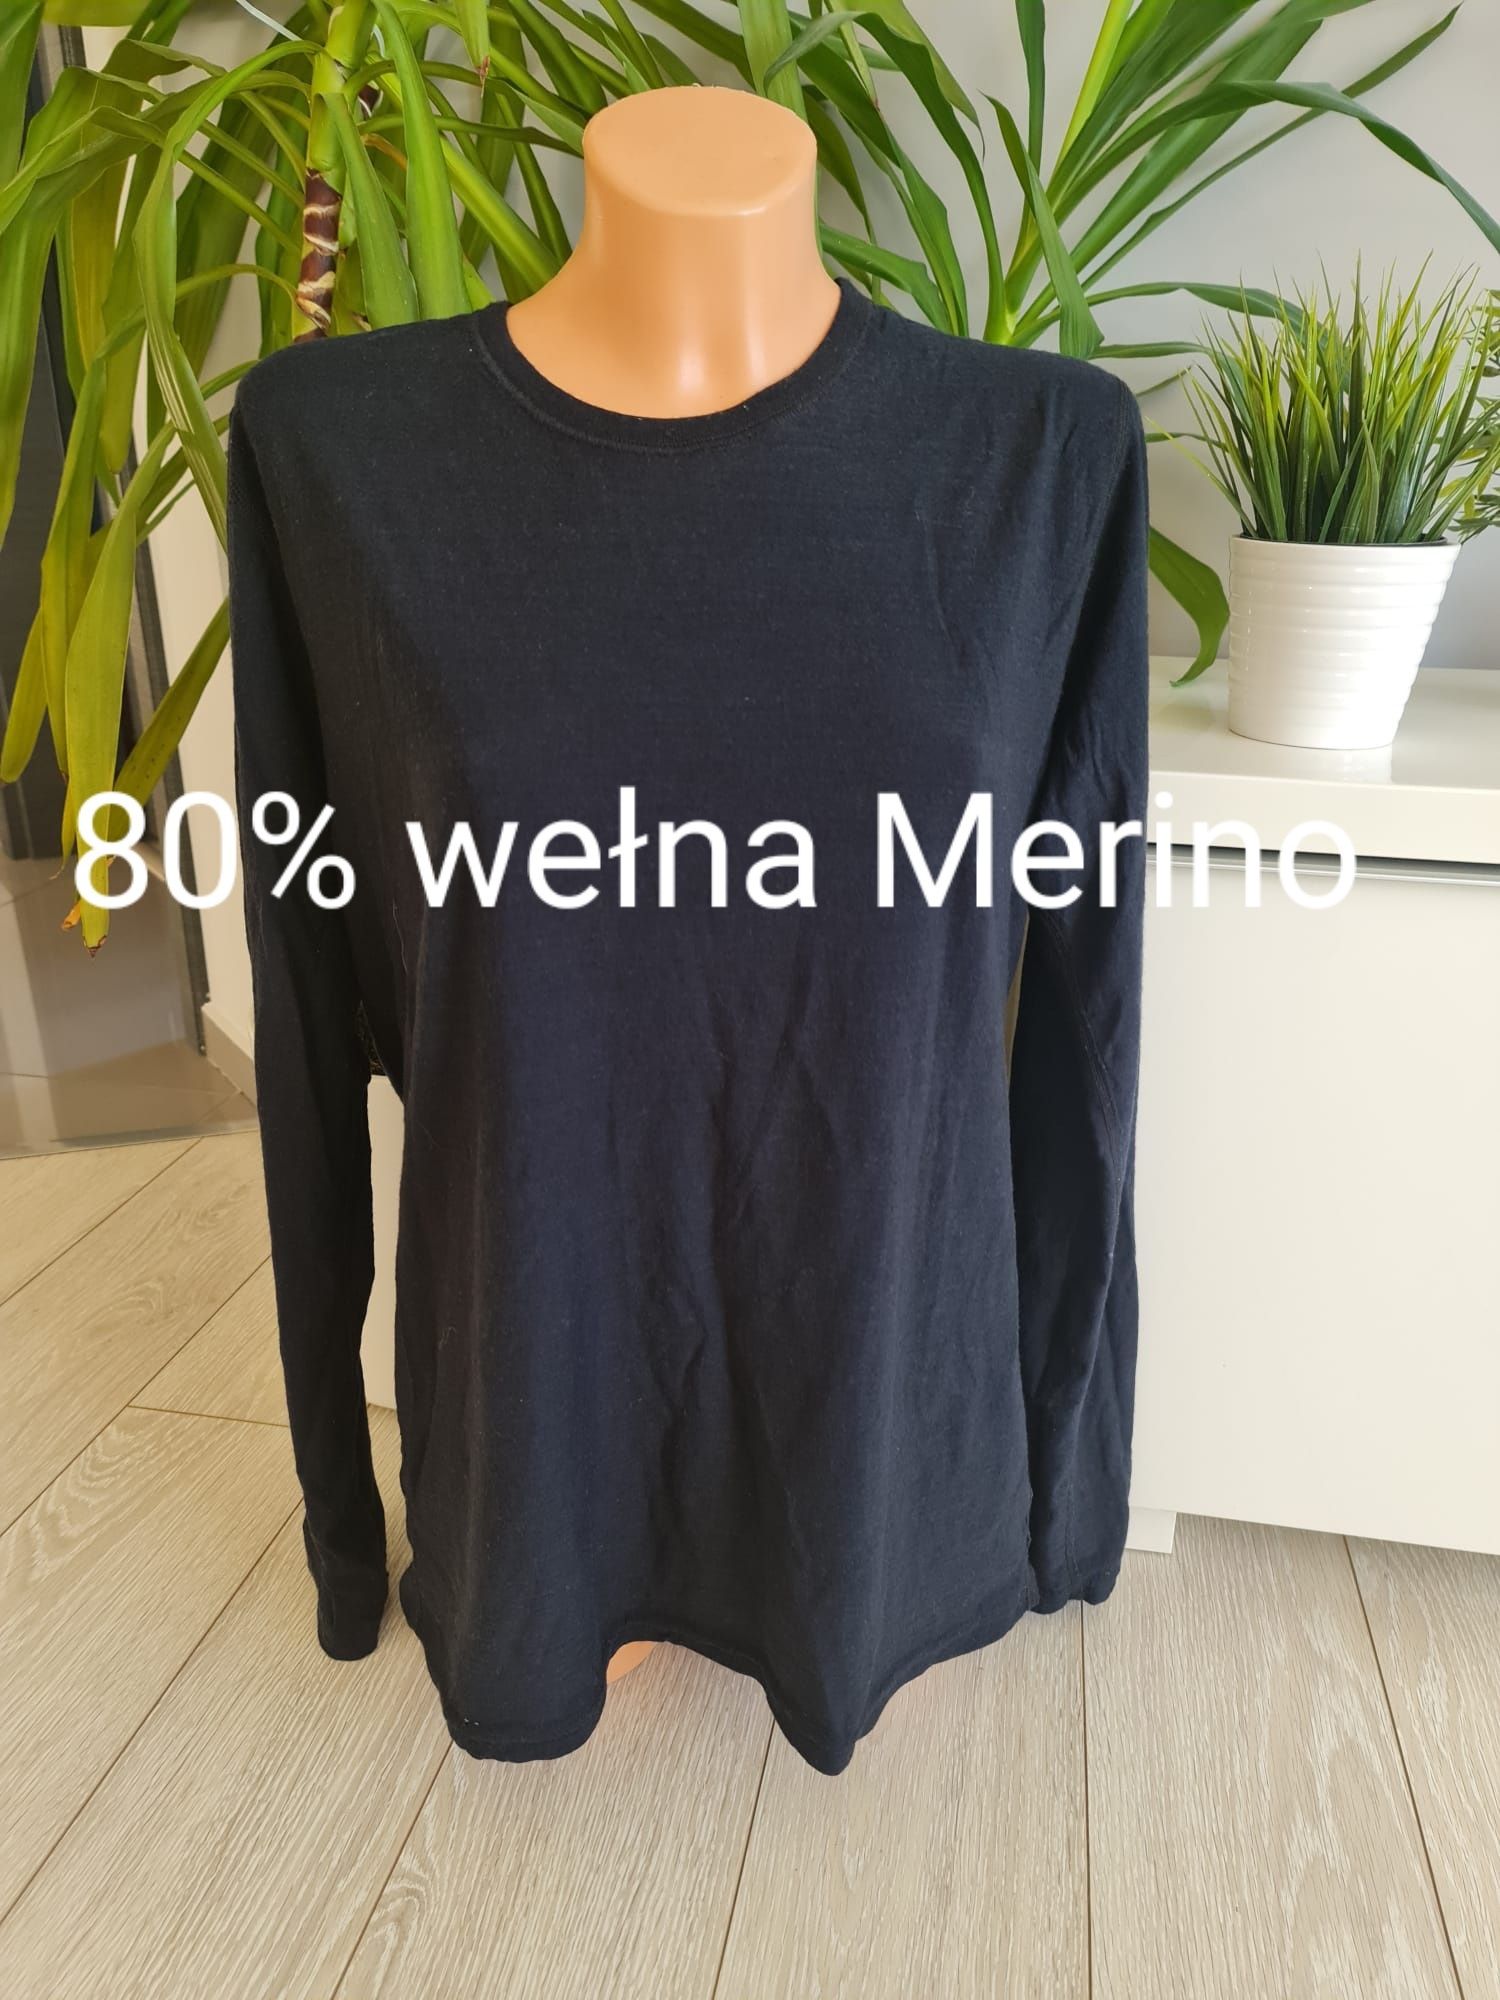 Janus 80% wełna Merino bluzka termoaktywna rozmiar L